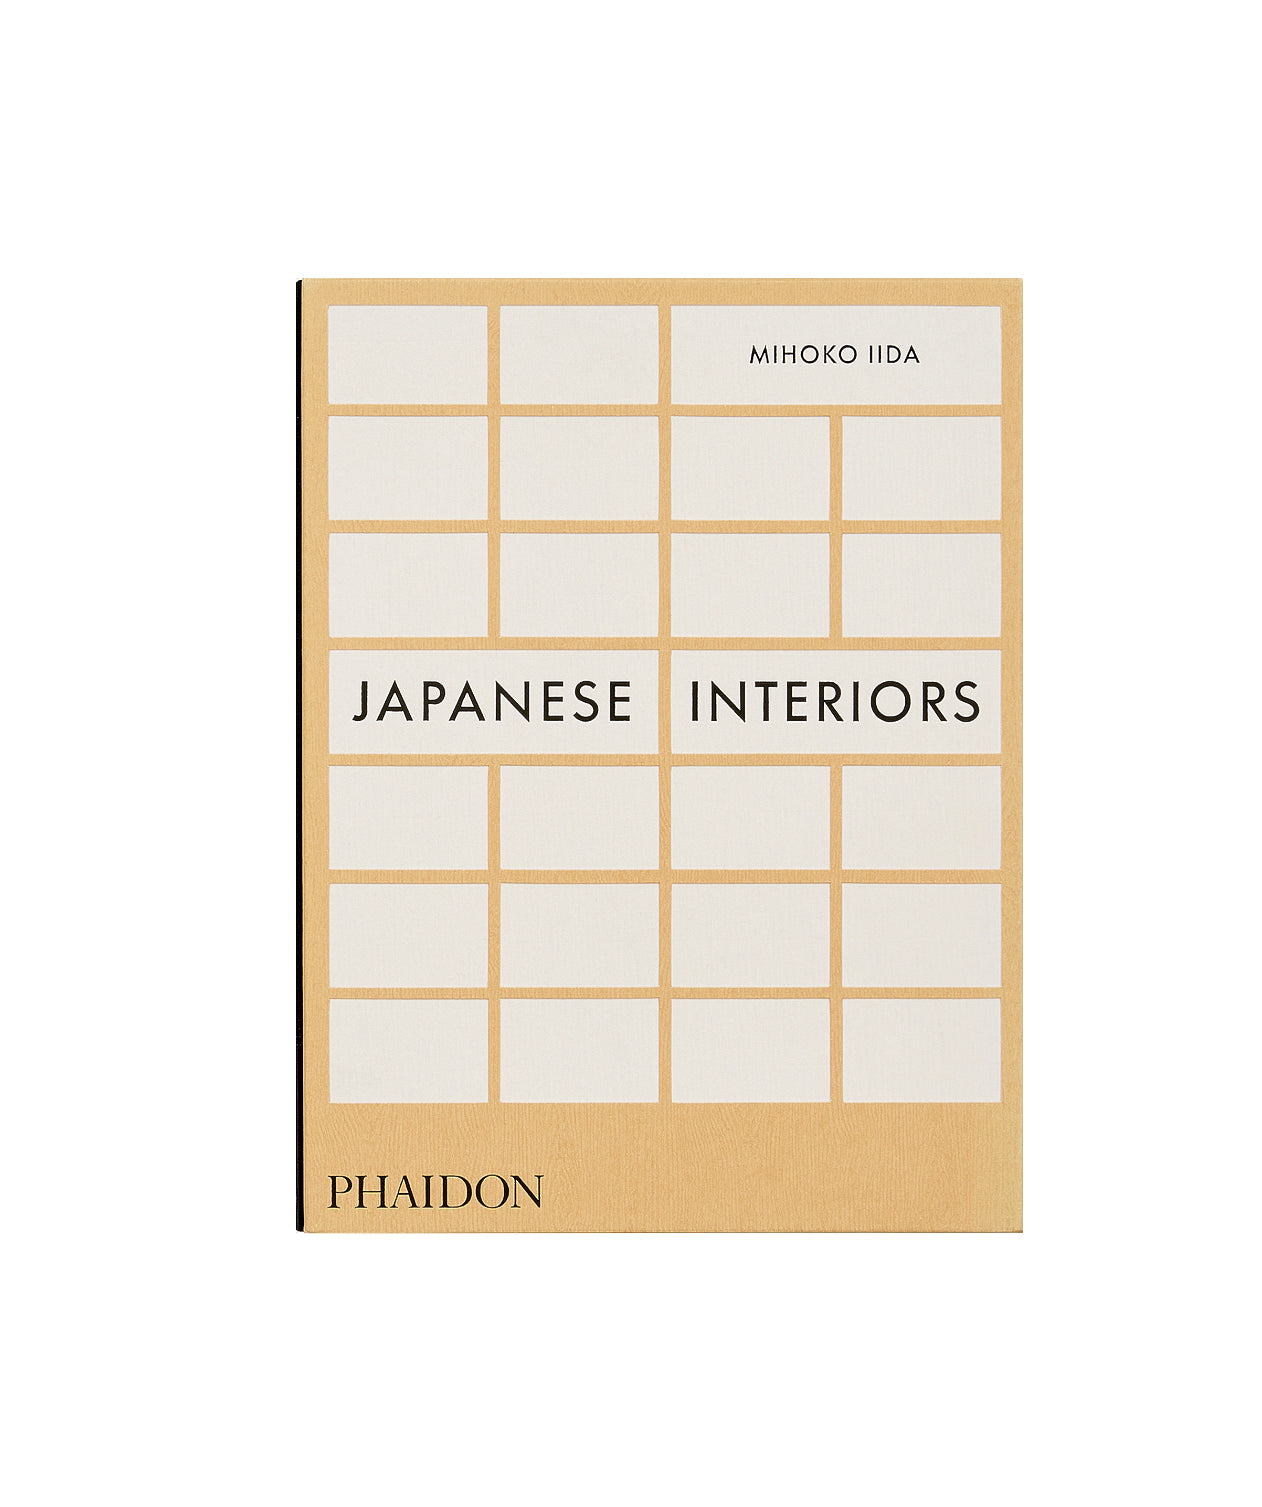 "Japanese Interiors", Mihoko Iida